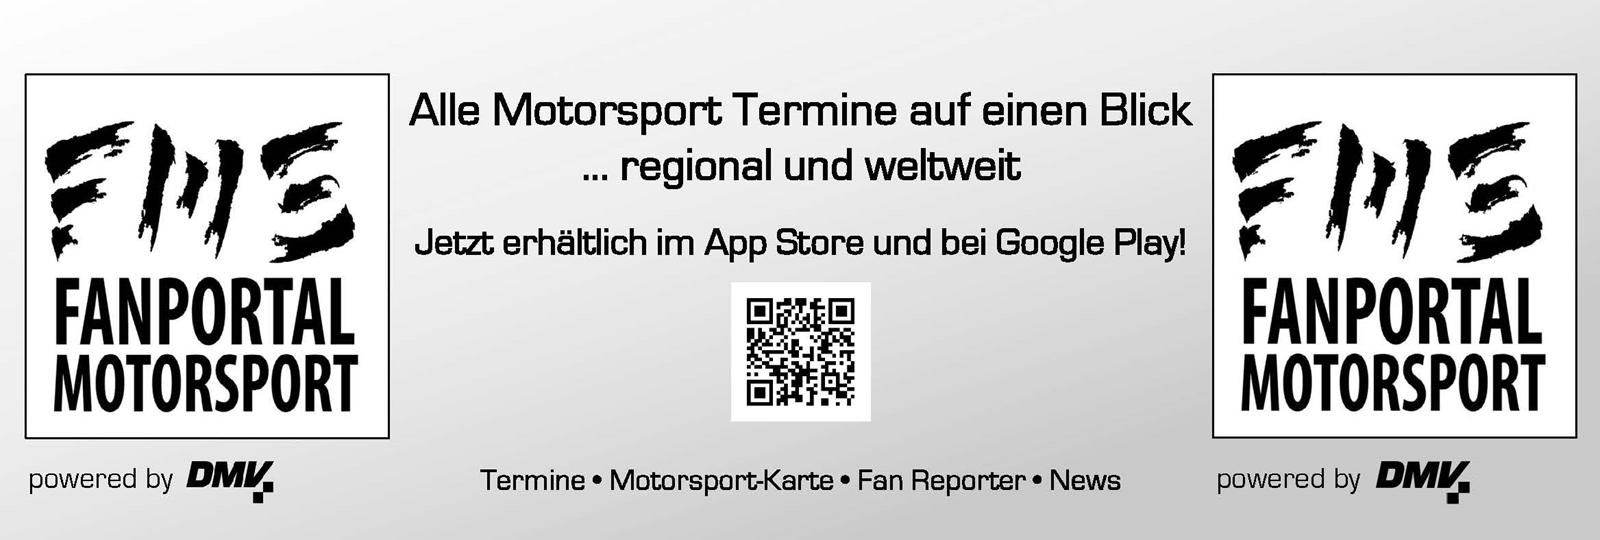 Fanportal Motorsport